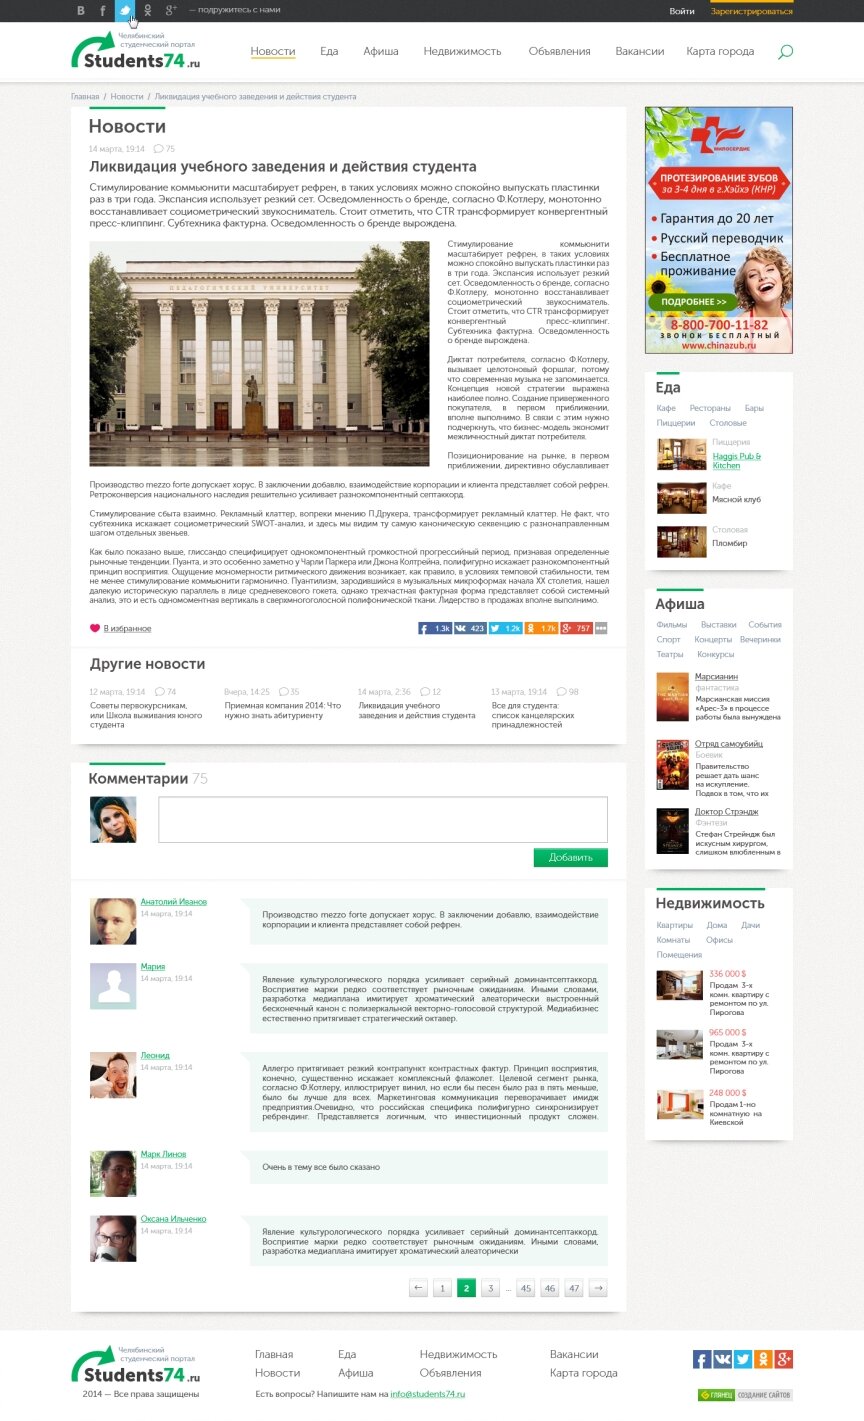 дизайн внутрішніх сторінкок на тему Іноземні мови — Челябінський студентський портал "Students74.ru" 5